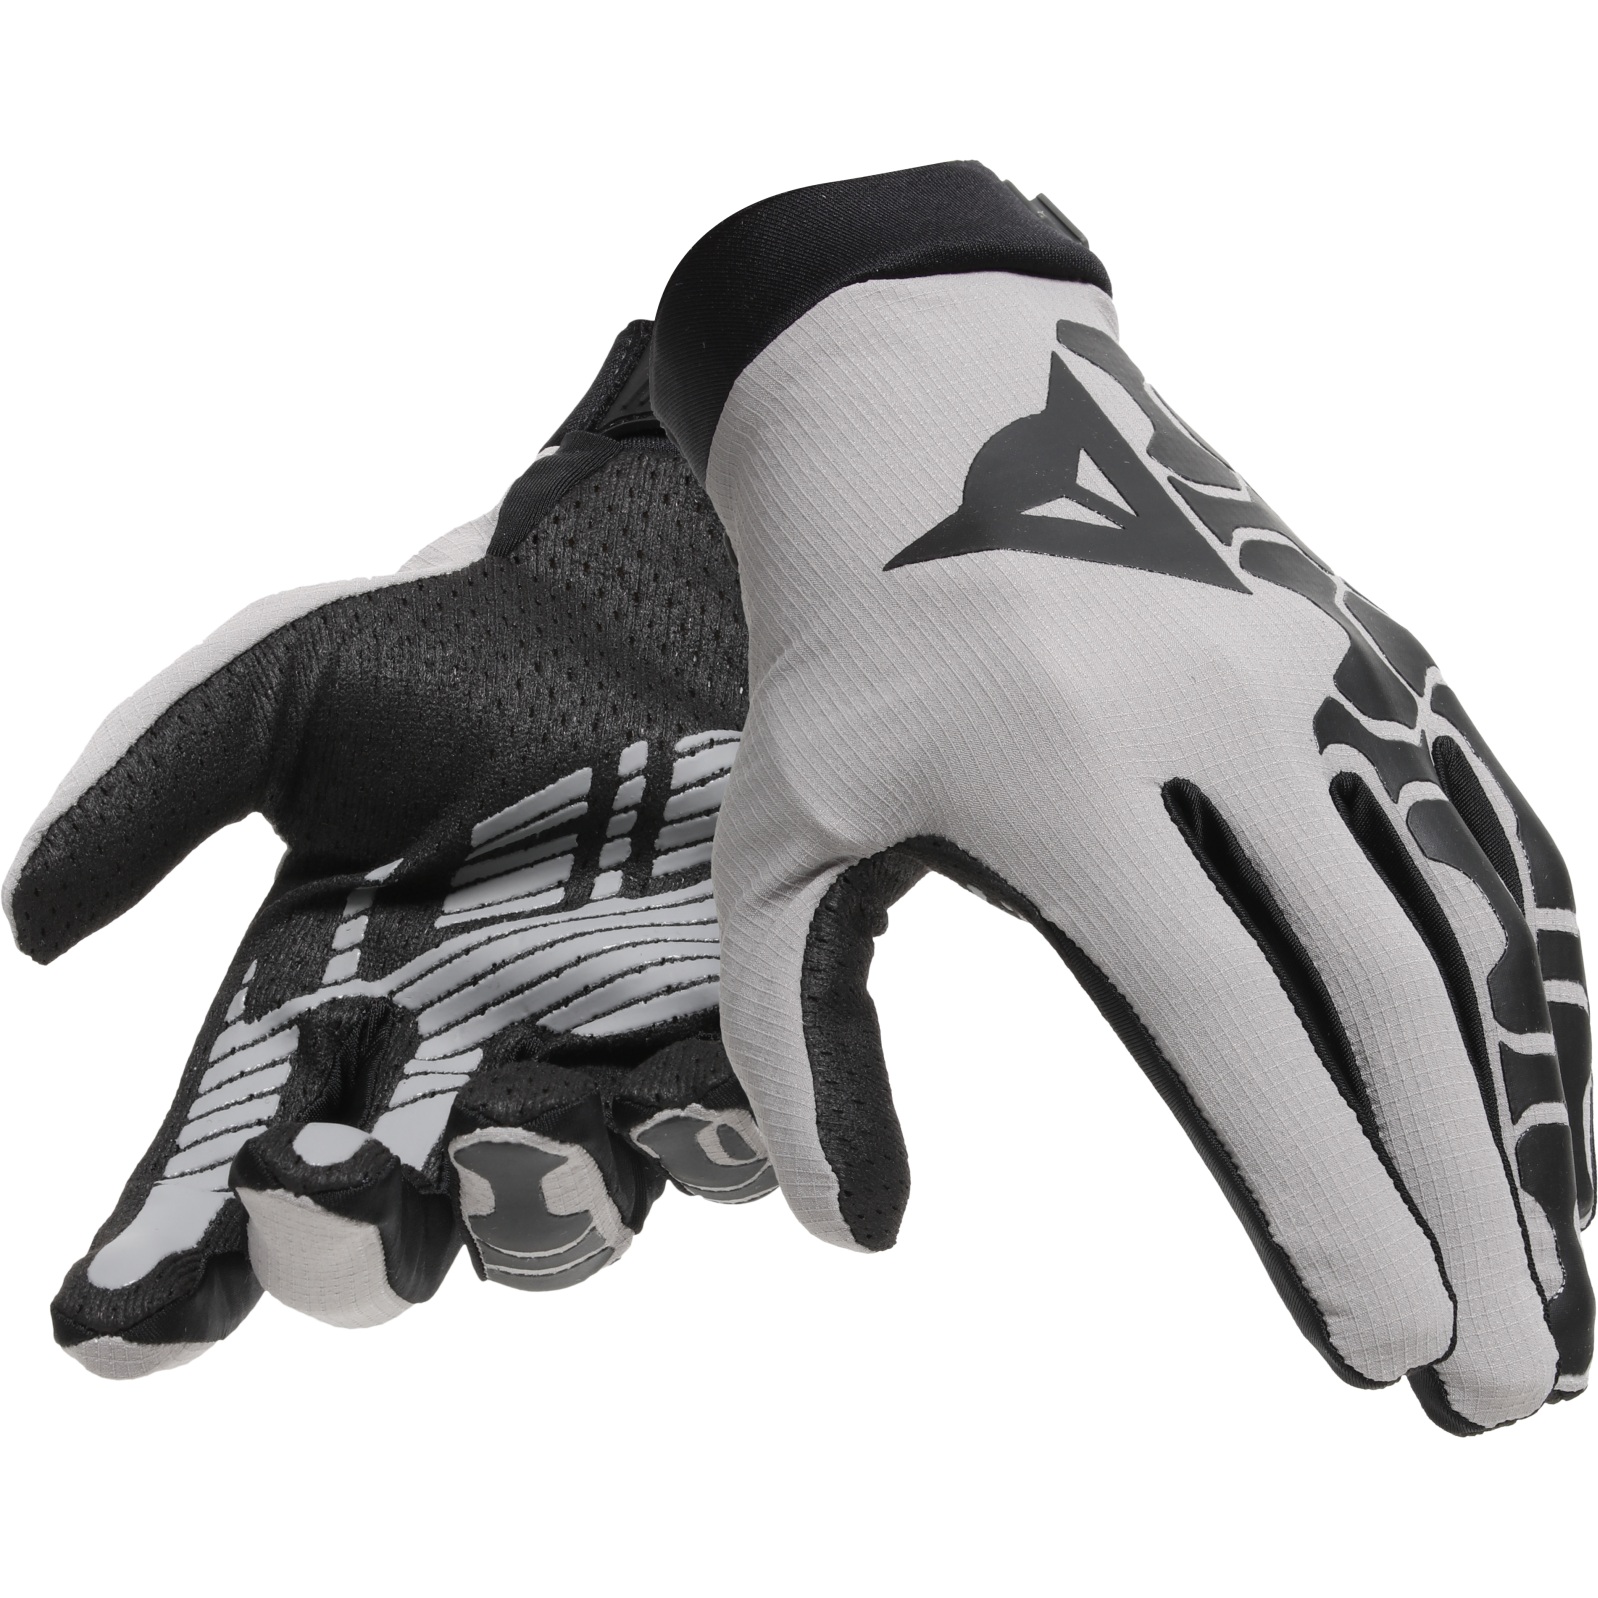 Productfoto van Dainese HGR Handschoenen - grijs